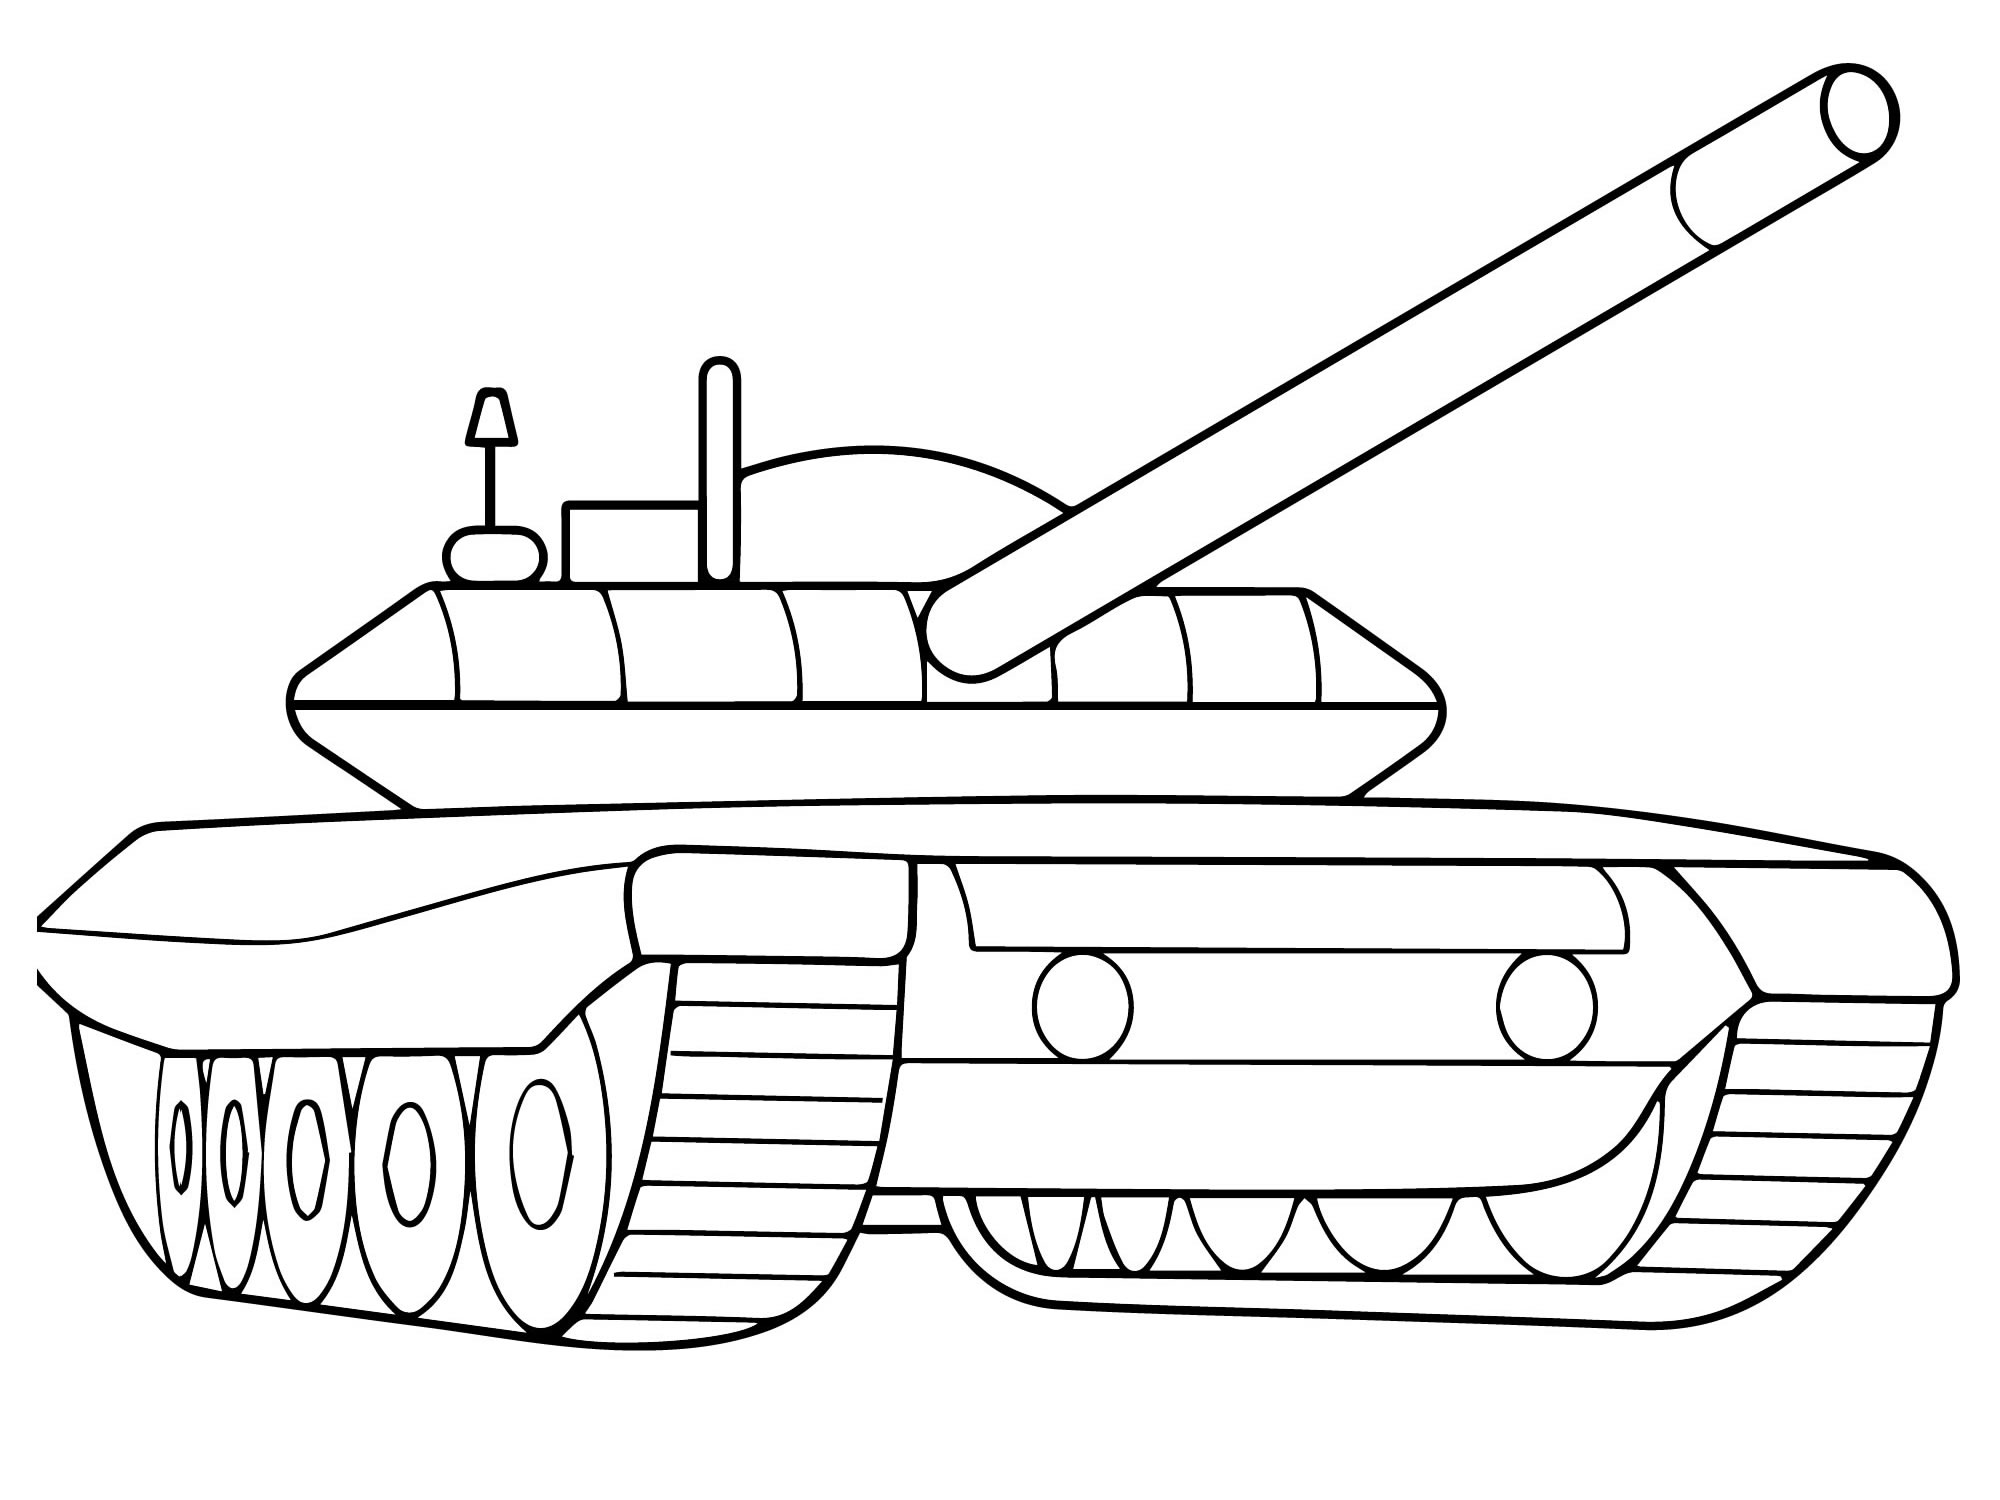 Танк из World of Tanks раскраска для детей